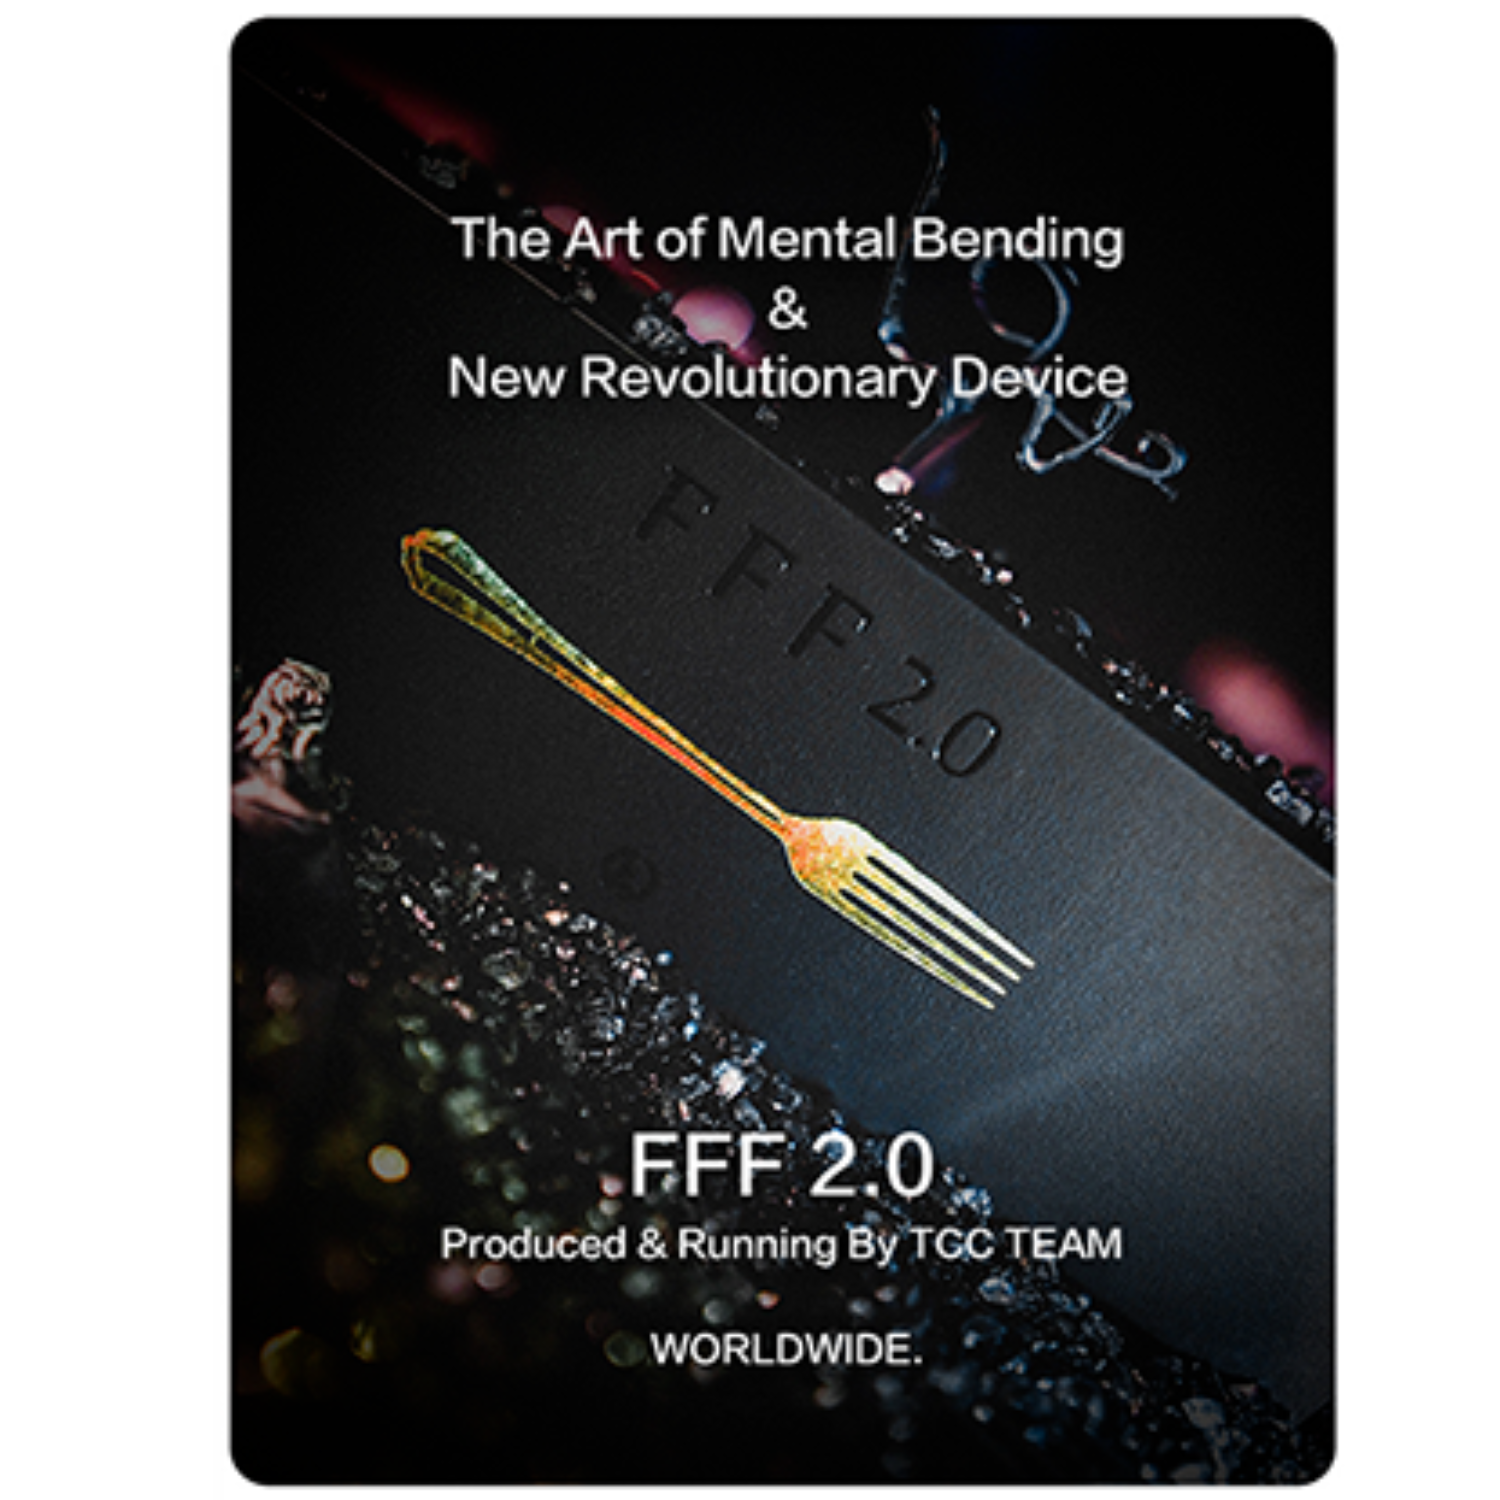 [멘탈벤딩]The Art Of Mental Bending, FFF 2.0 By TCC  포크를 엿가락처럼 휘어버리는 초능력마술!!!